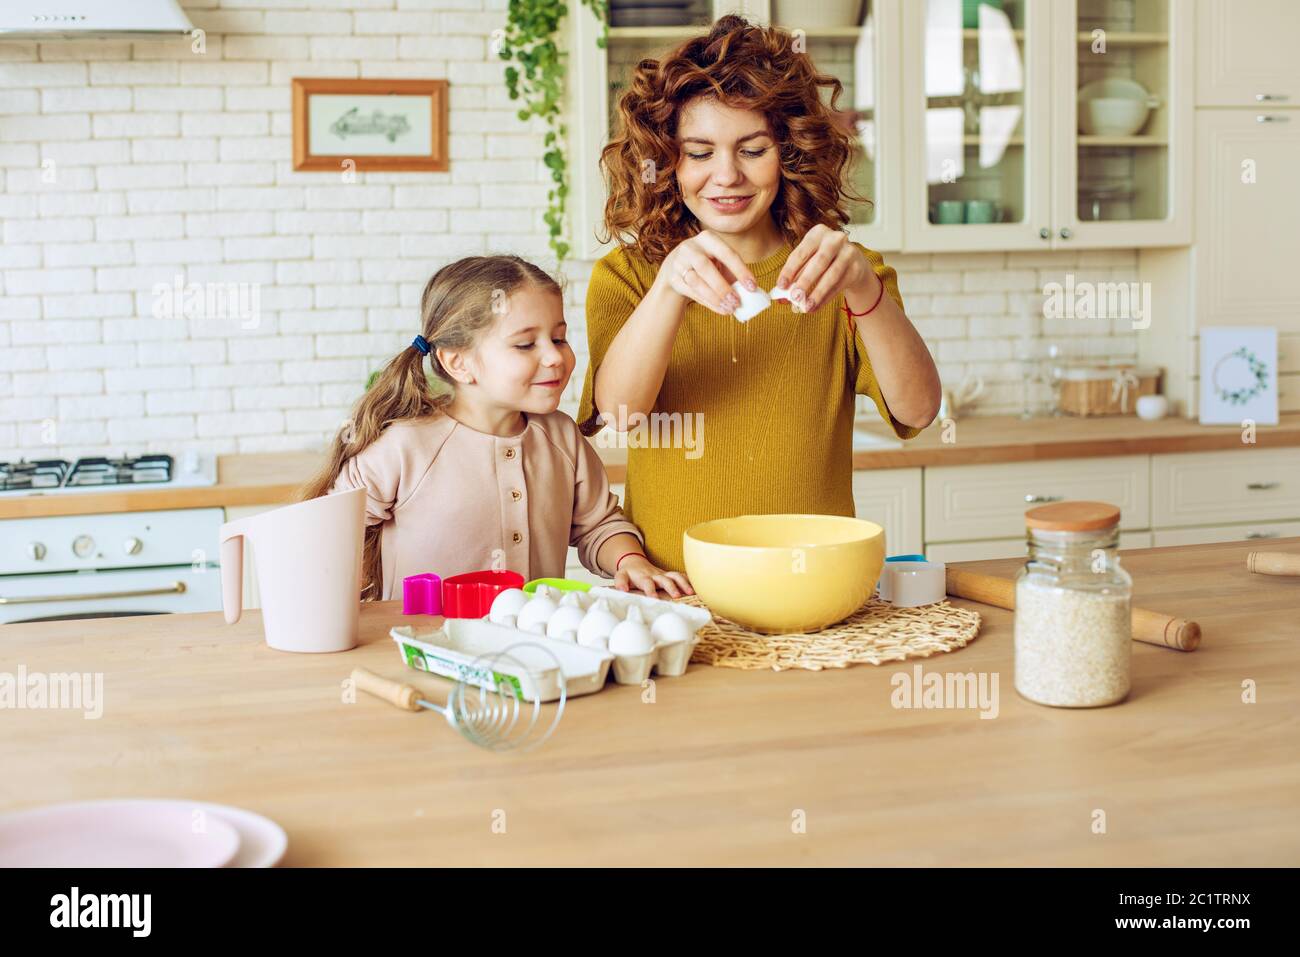 La mère et la fille préparent un gâteau ensemble dans la cuisine Banque D'Images